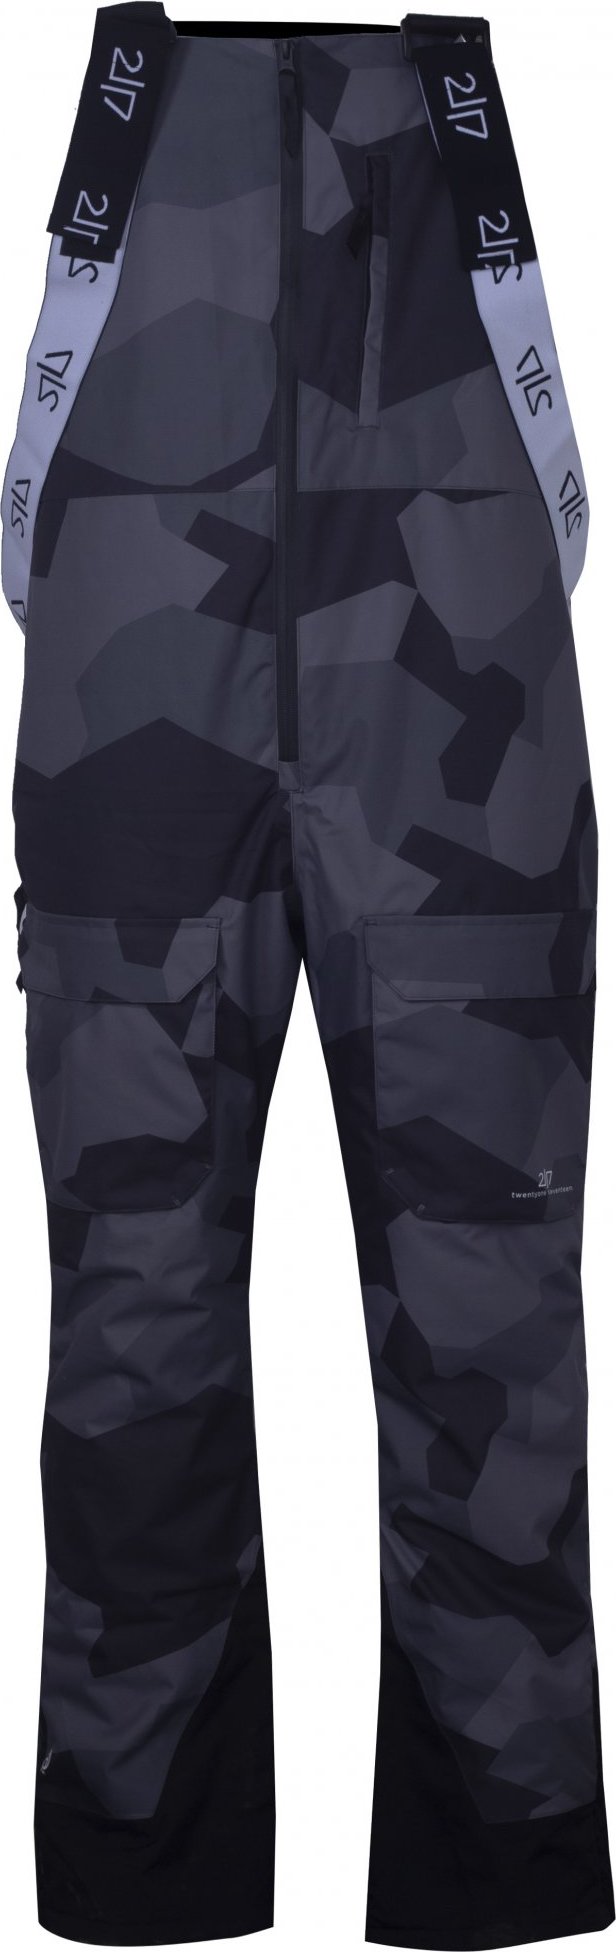 Pánské lyžařské kalhoty s náprsenkou 2117 Backa Eco černá camo Velikost: S